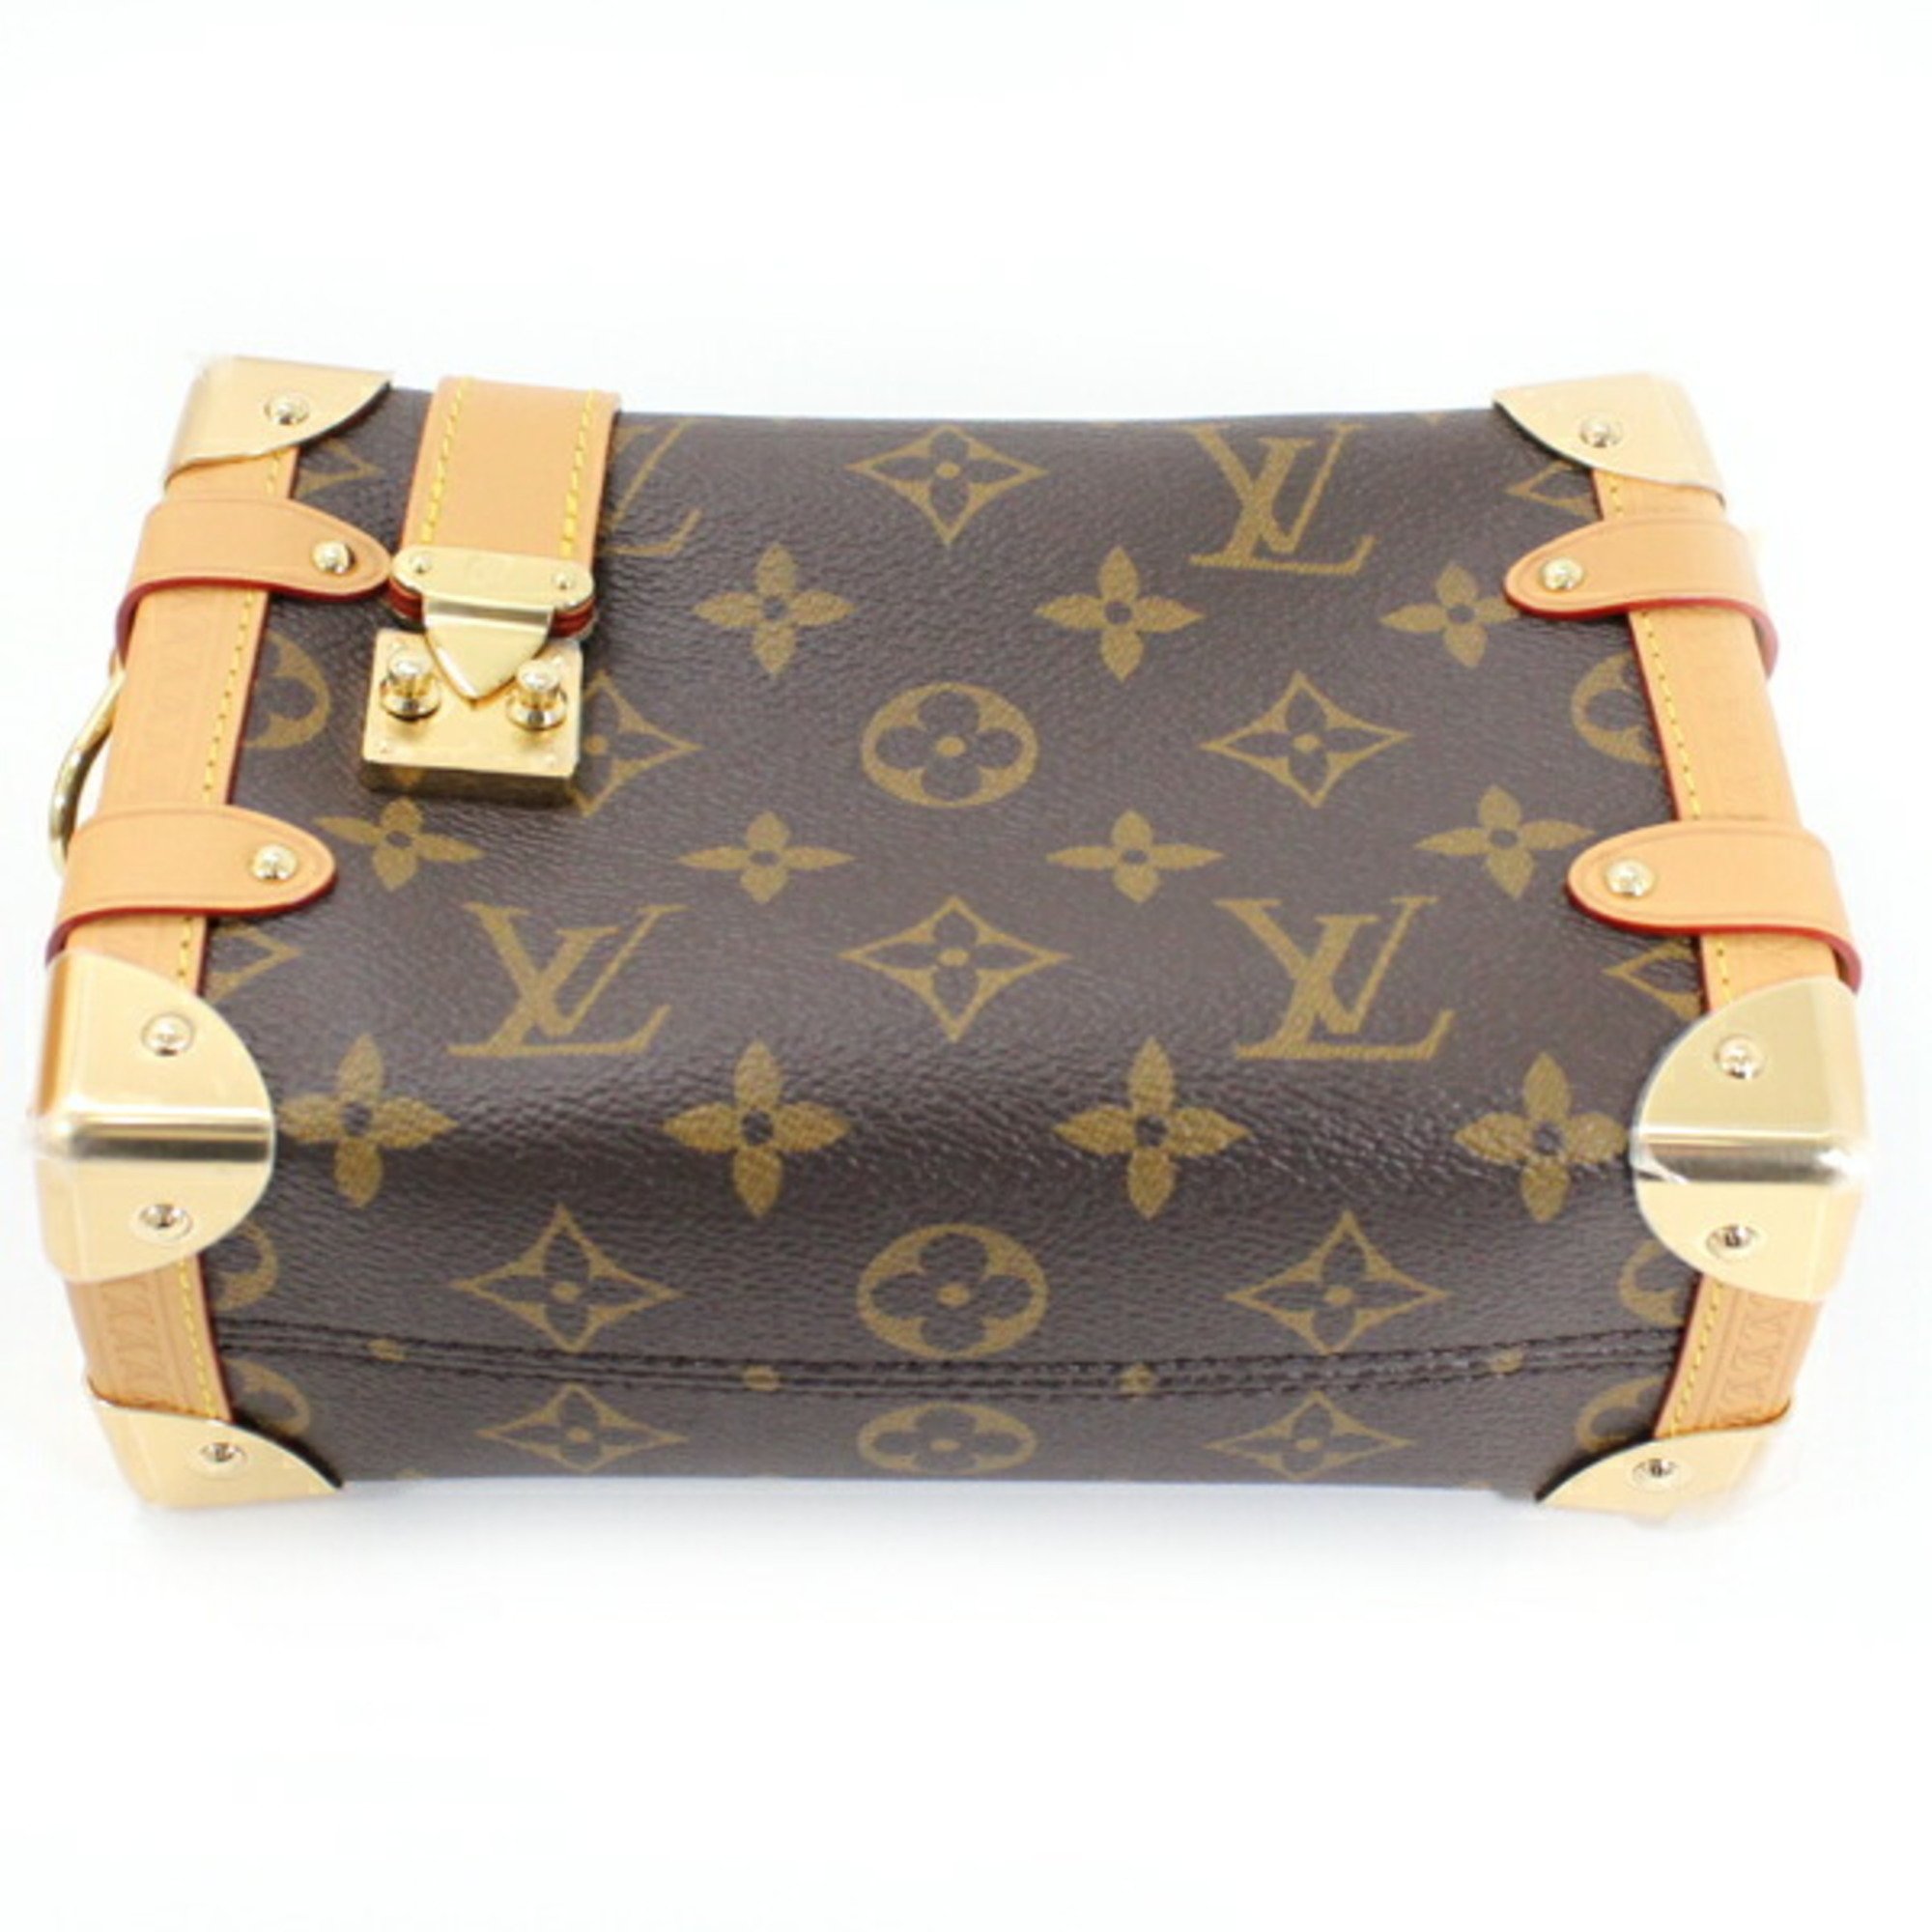 Louis Vuitton Shoulder Bag Side Trunk PM Monogram Brown M46815 Ladies New Luxury LOUIS VUITTON T4854-r